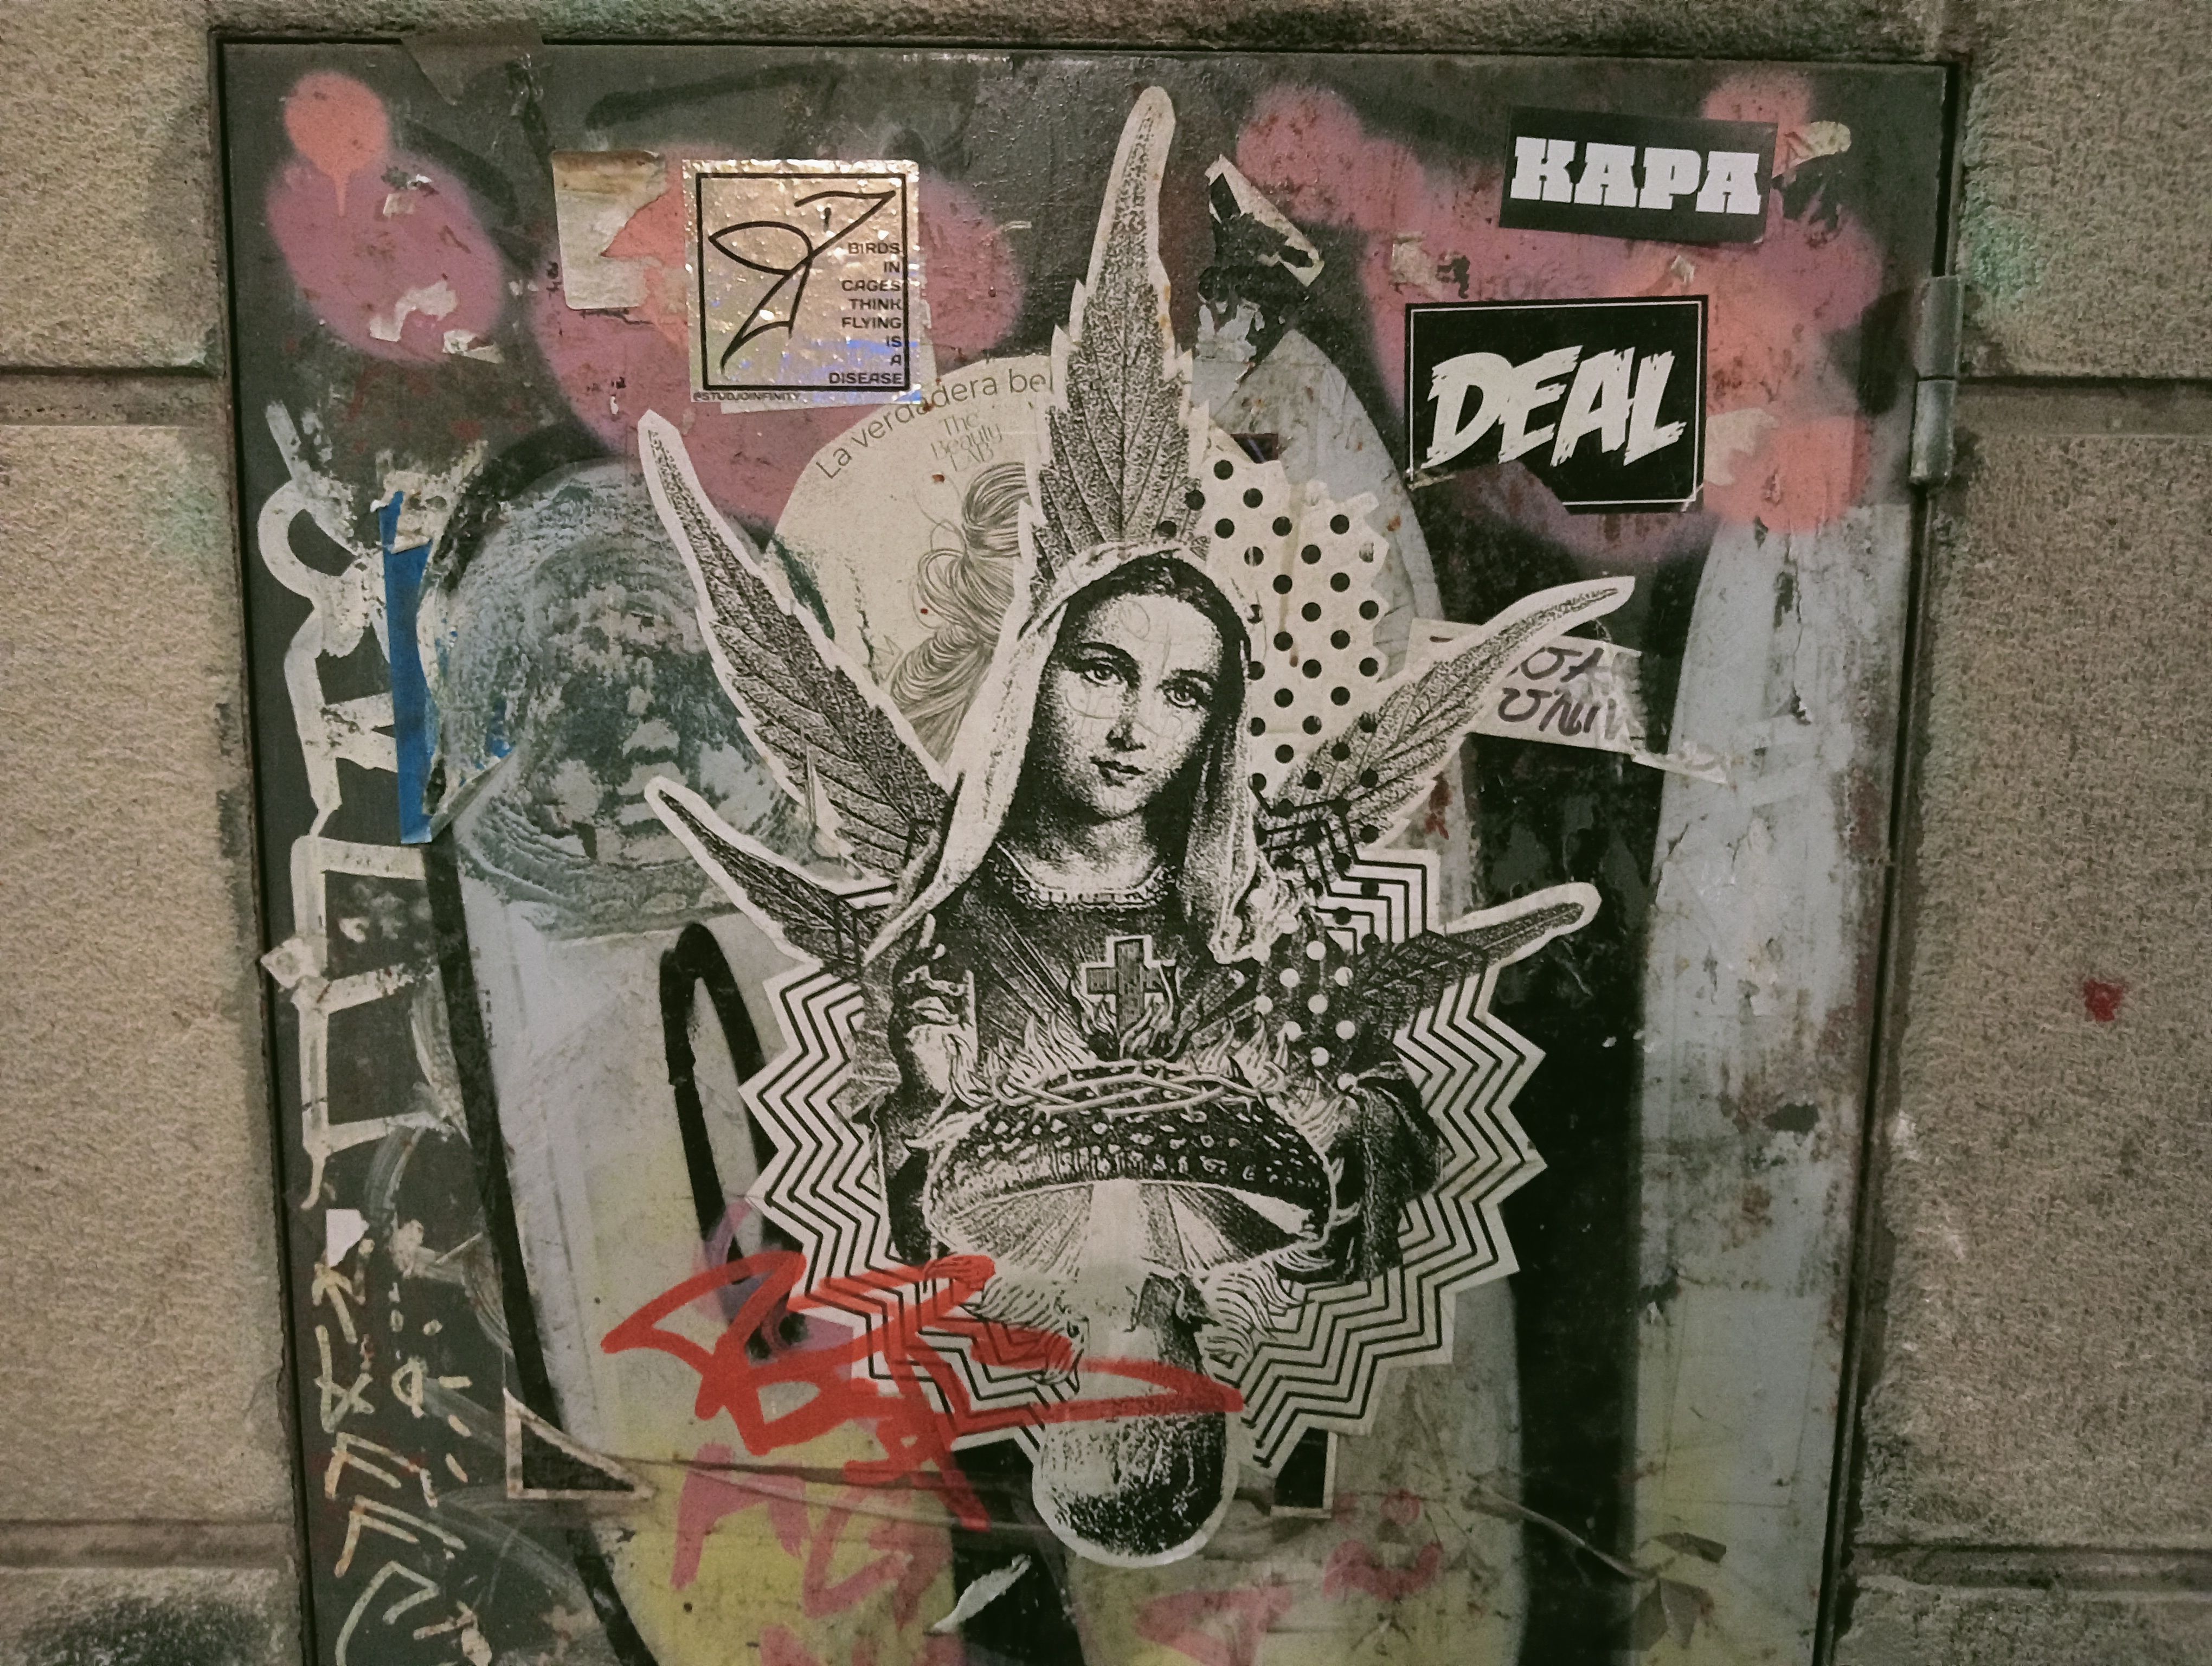 Verge dels Fongs grafitejada en un carreró del barri de Sant Pere de Barcelona